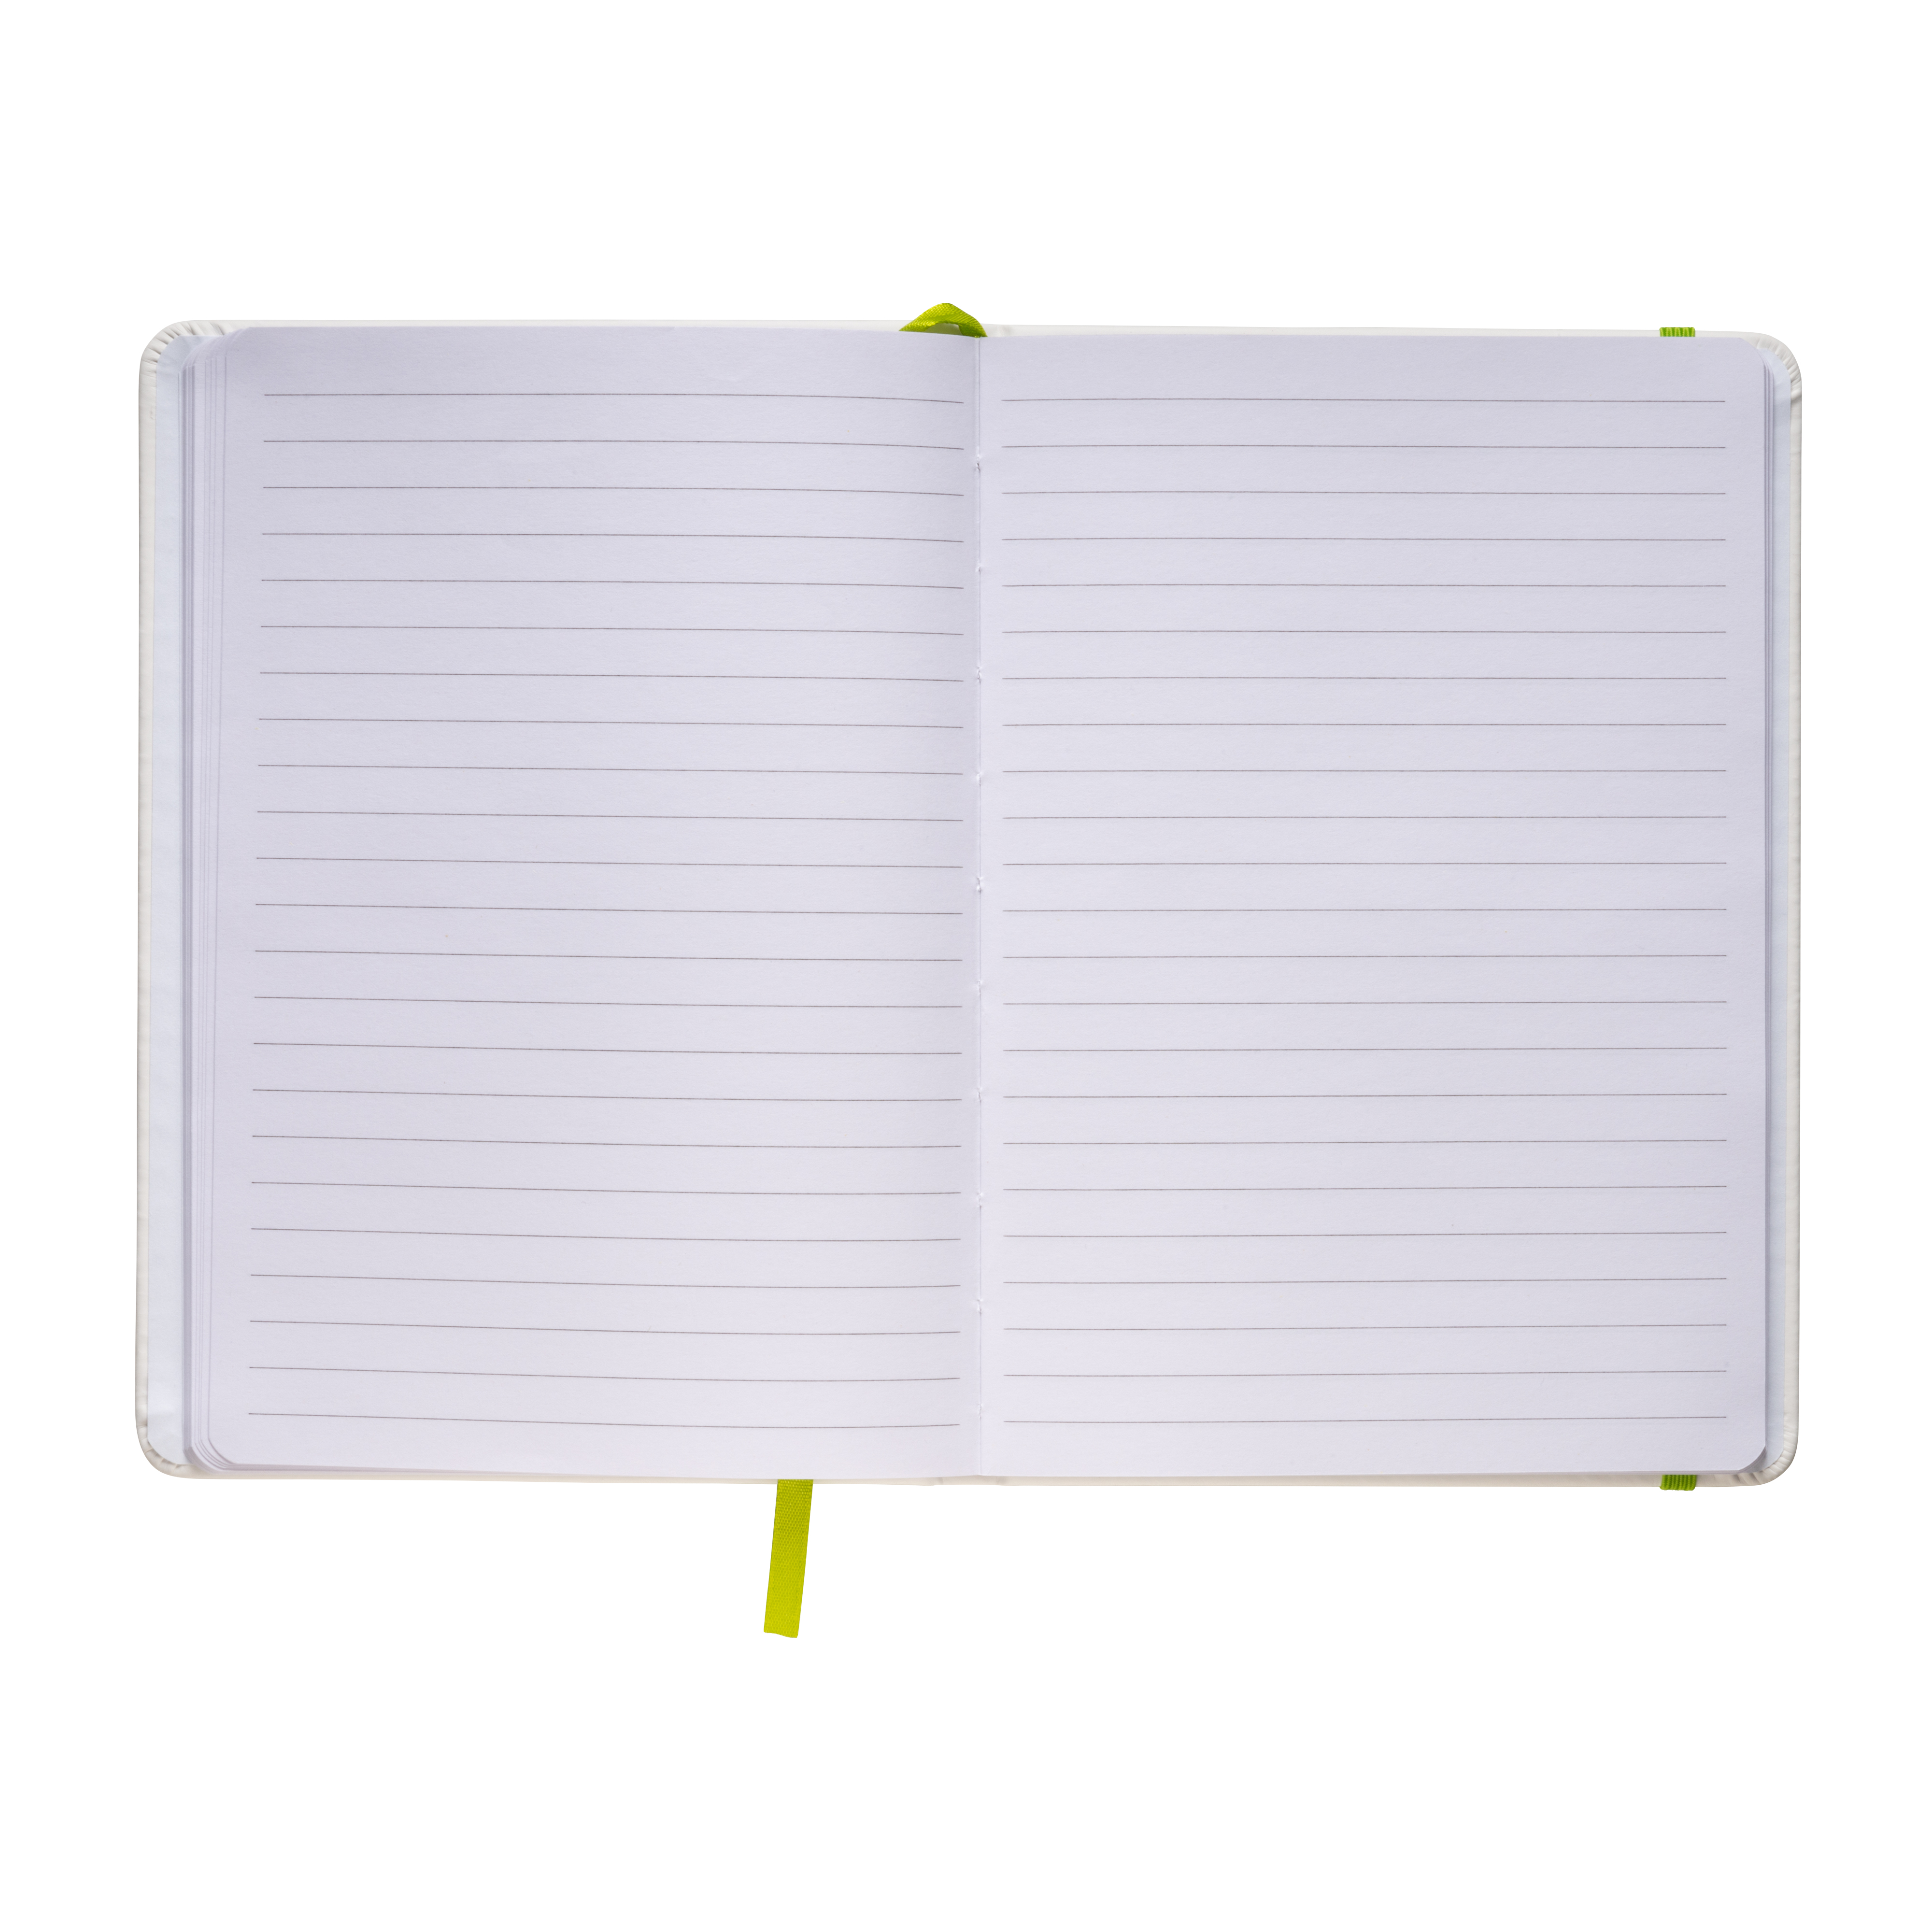 Quaderno Bianco Personalizzabile: Elastico Colorato!